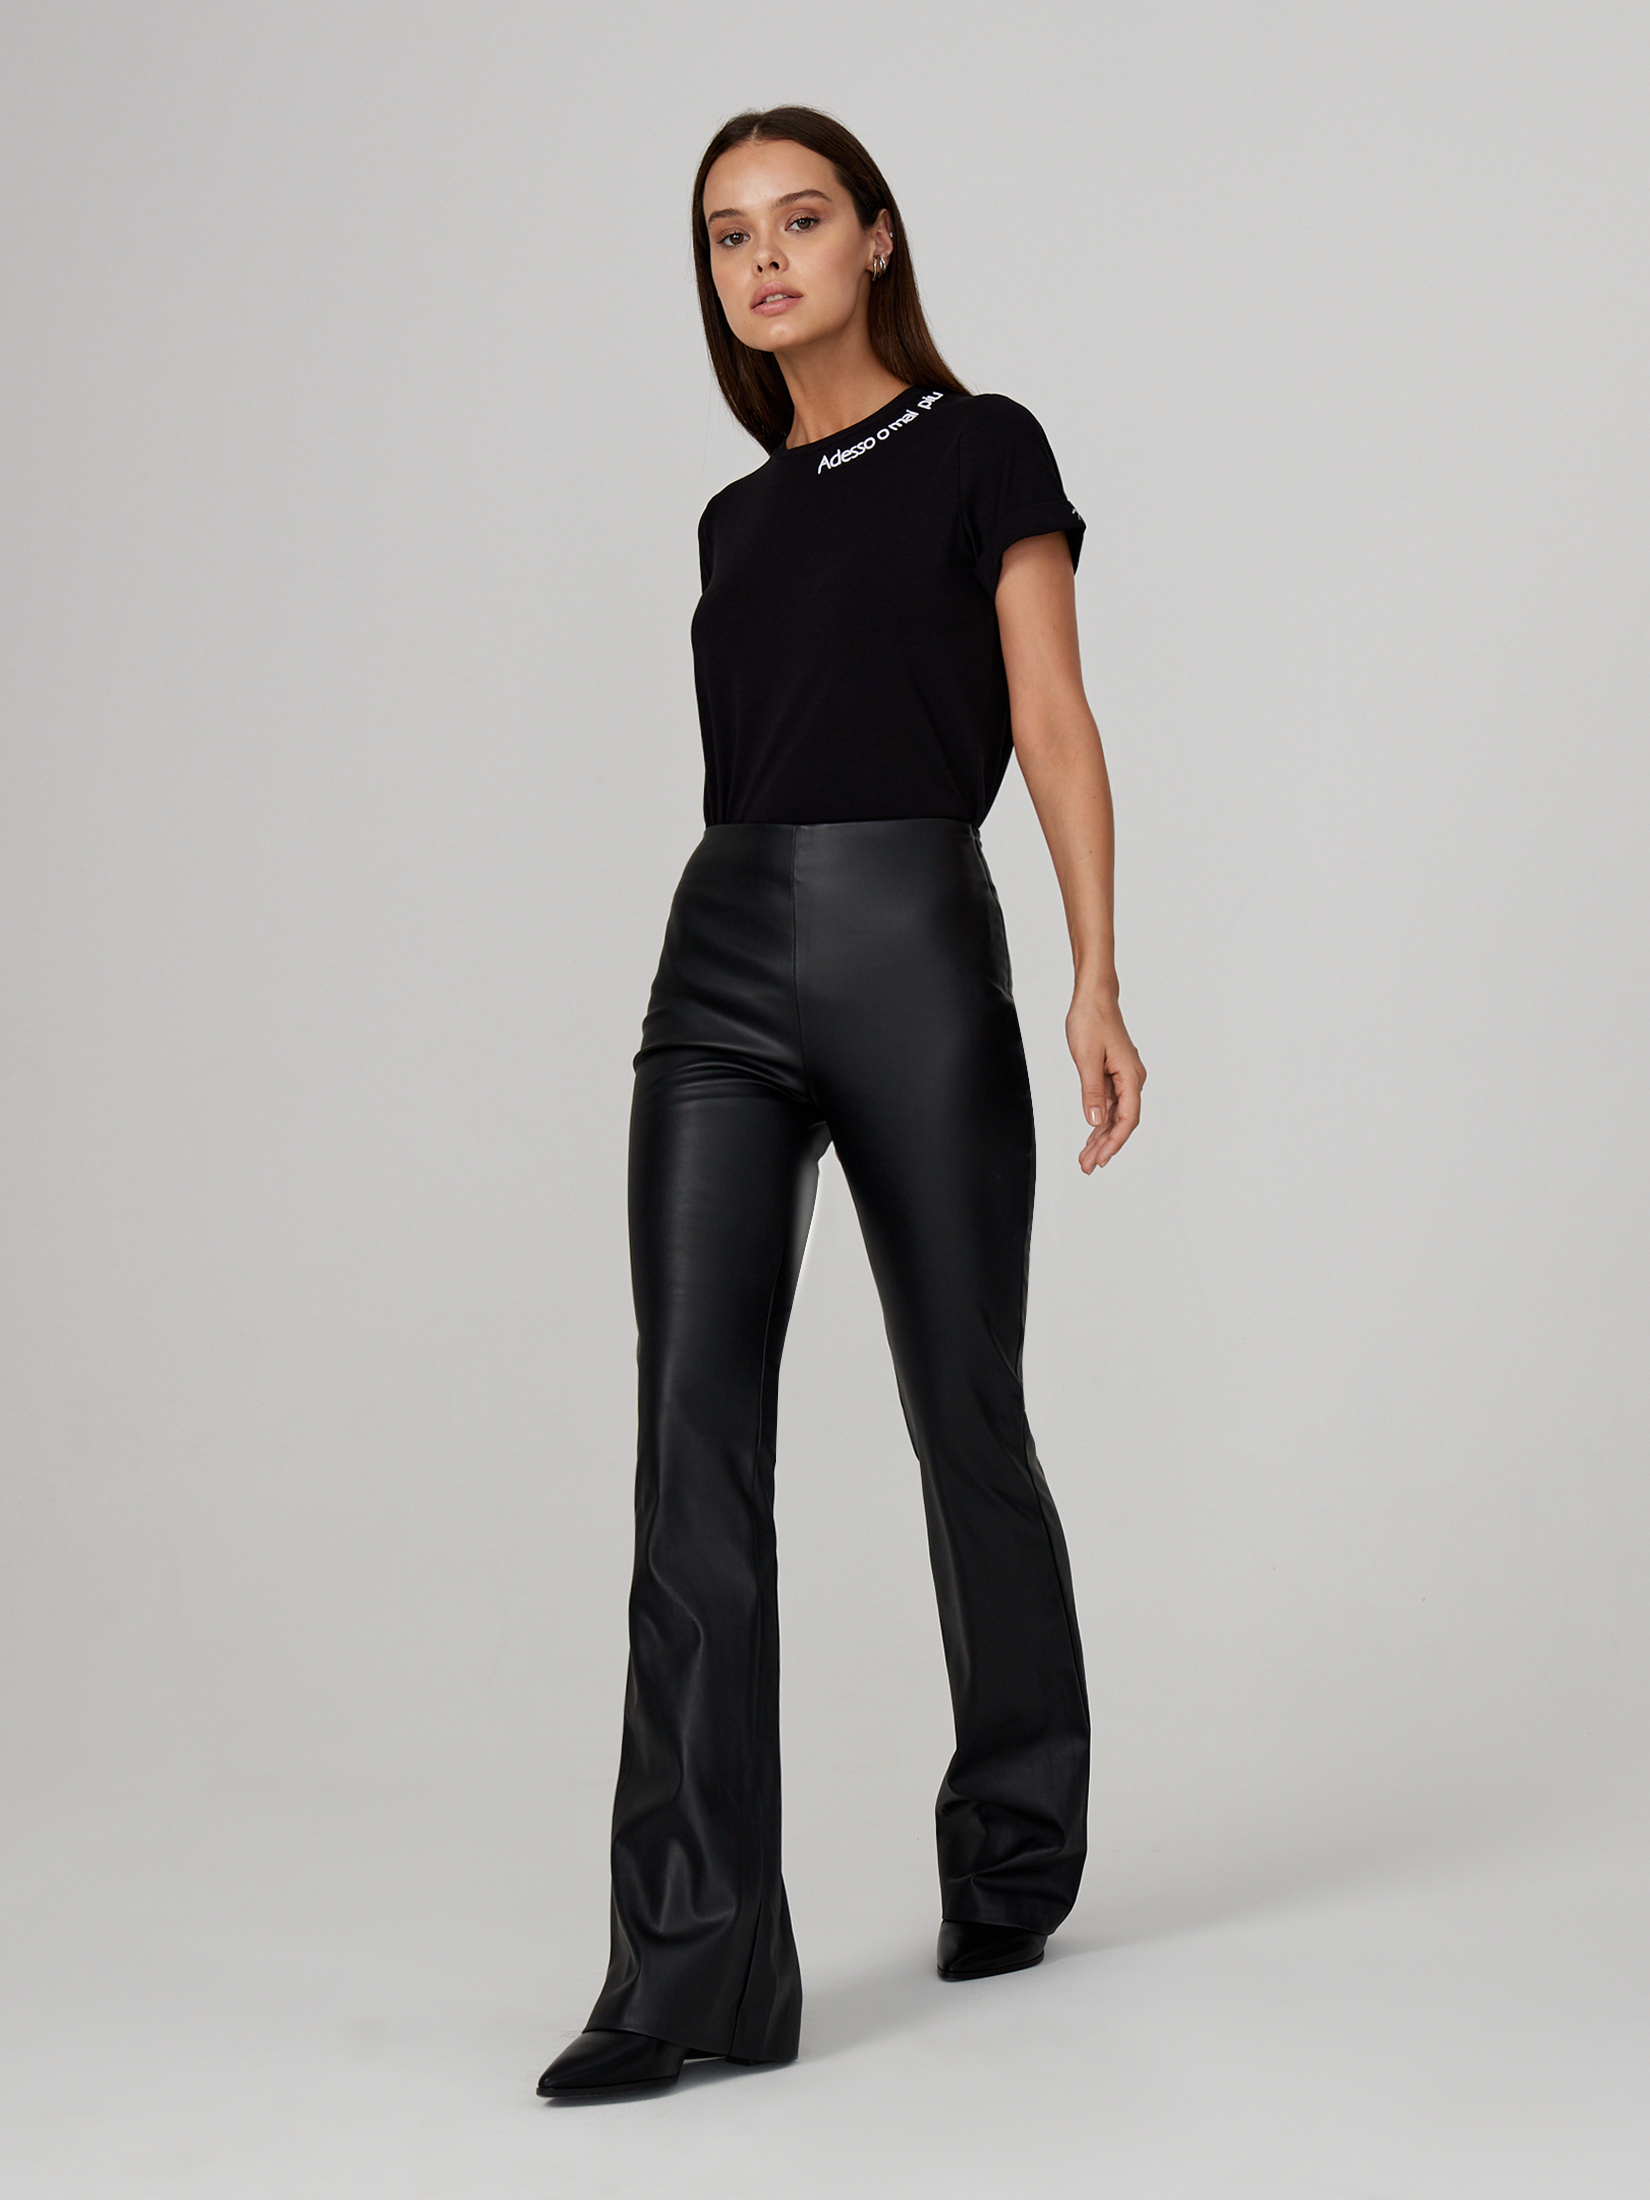 Брюки женские черные брюки женские modellini 1360 цвет черный размер 48